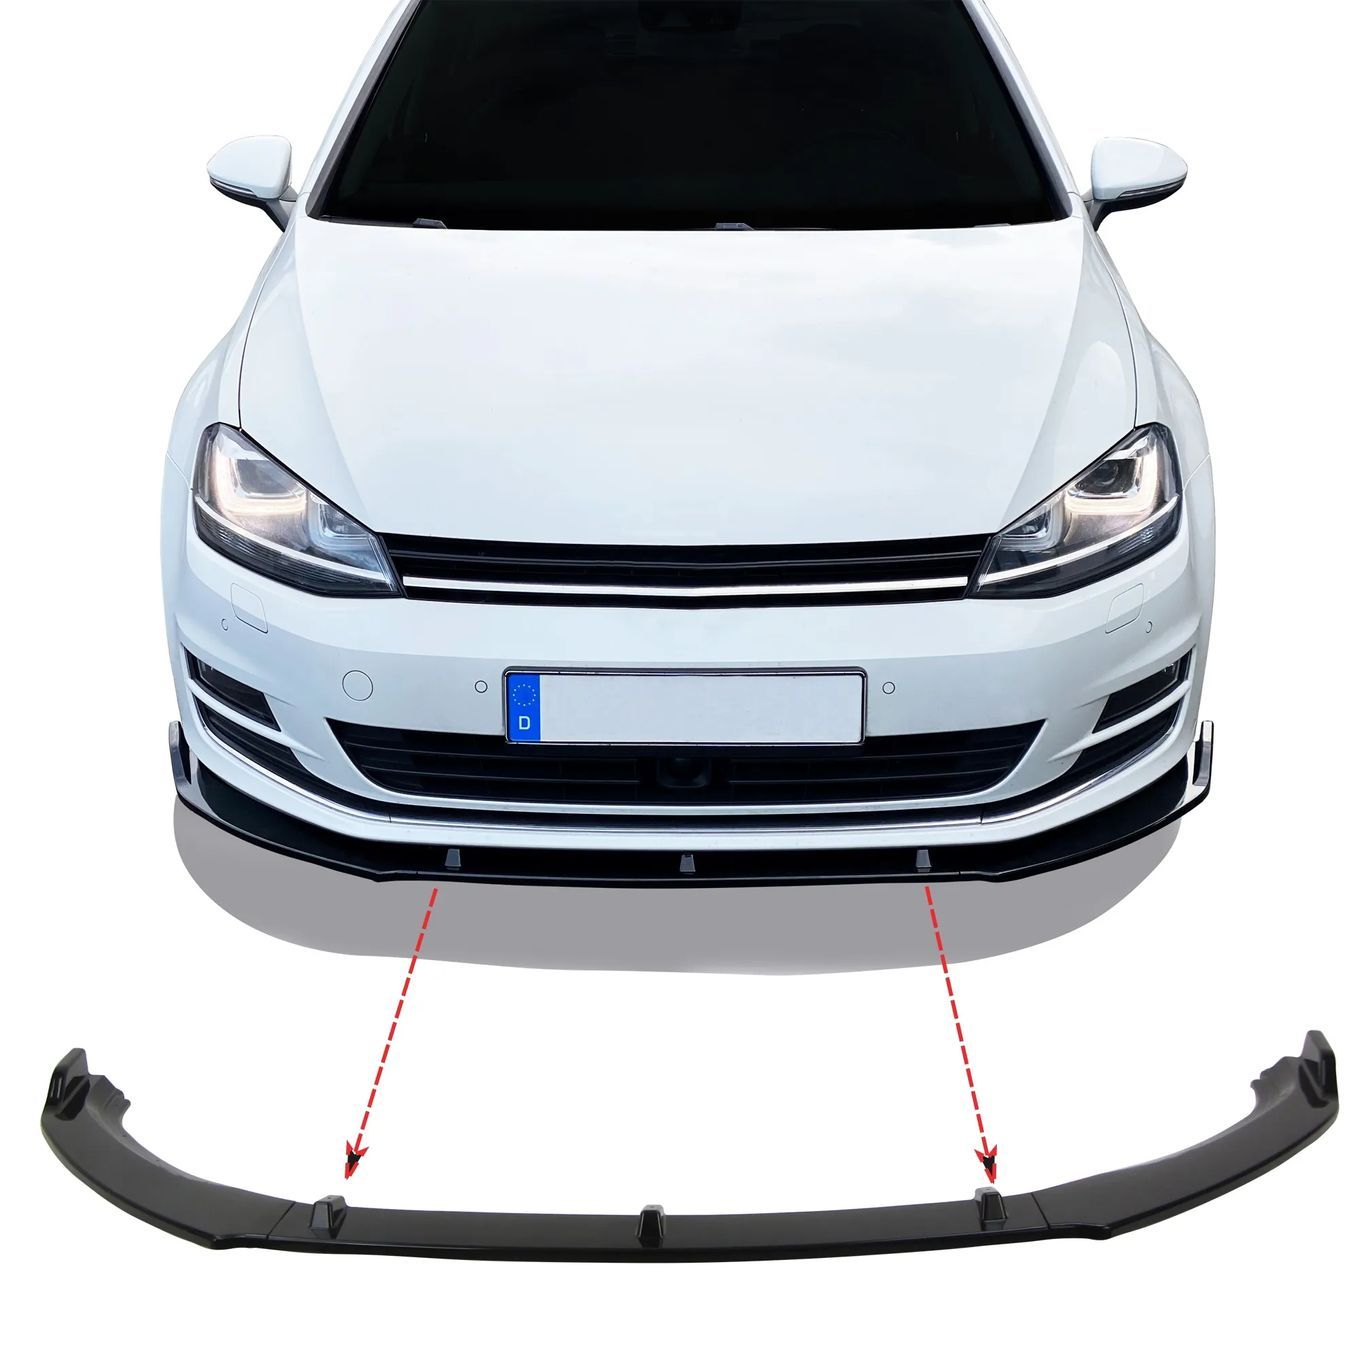 Difusor / Lip / spoiler frontal para VW Golf 7 2012 - 2019 preto piano brilhante em plástico ABS (para-choques standard)